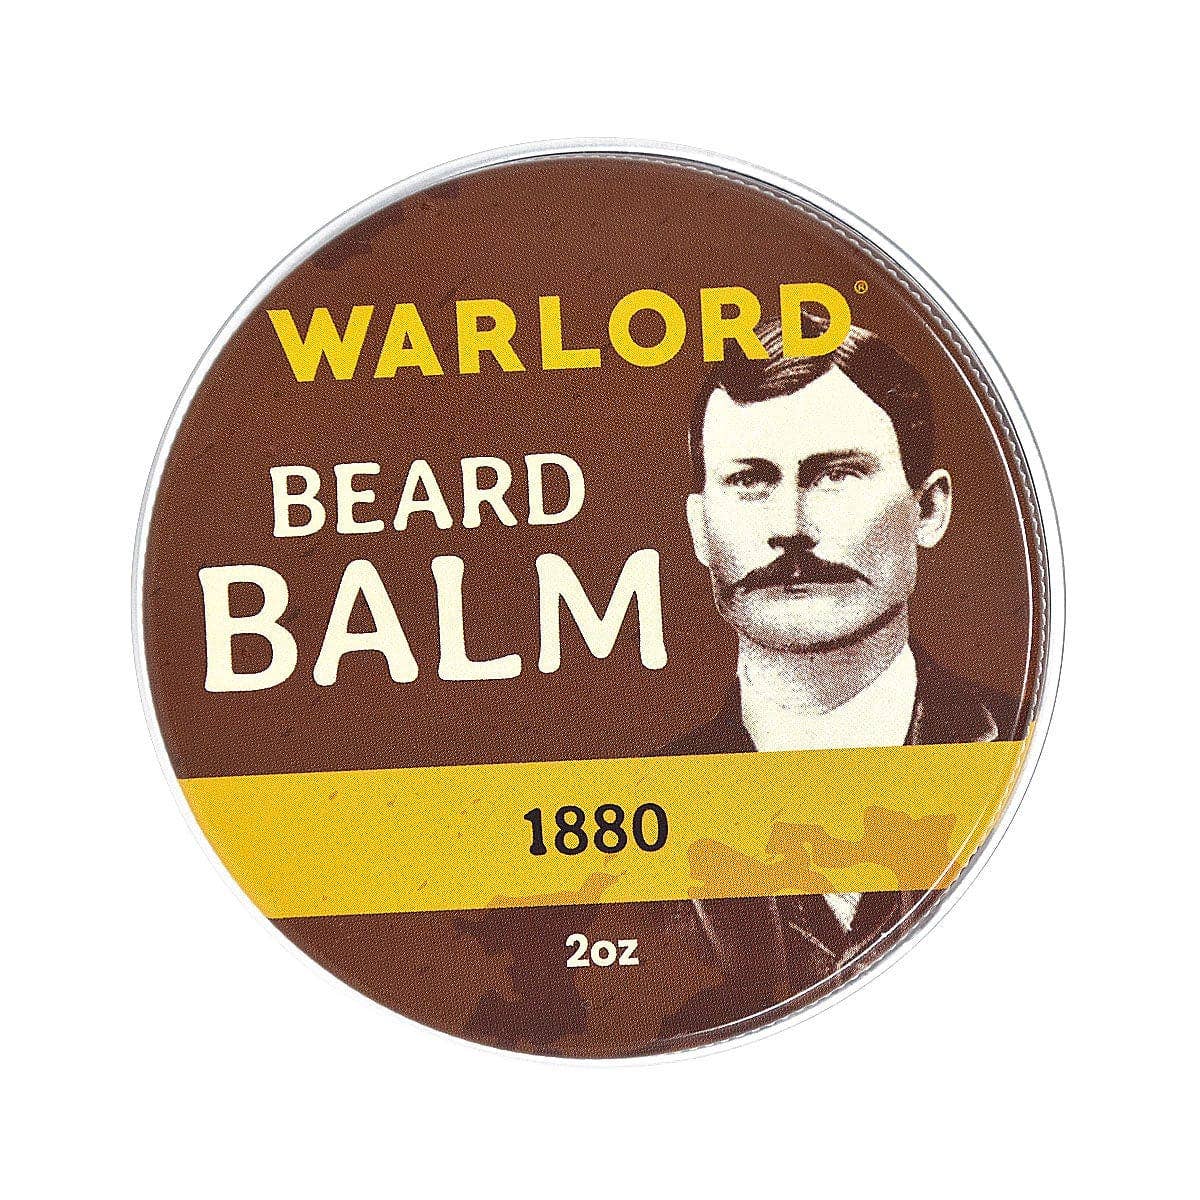 1880 Beard Balm